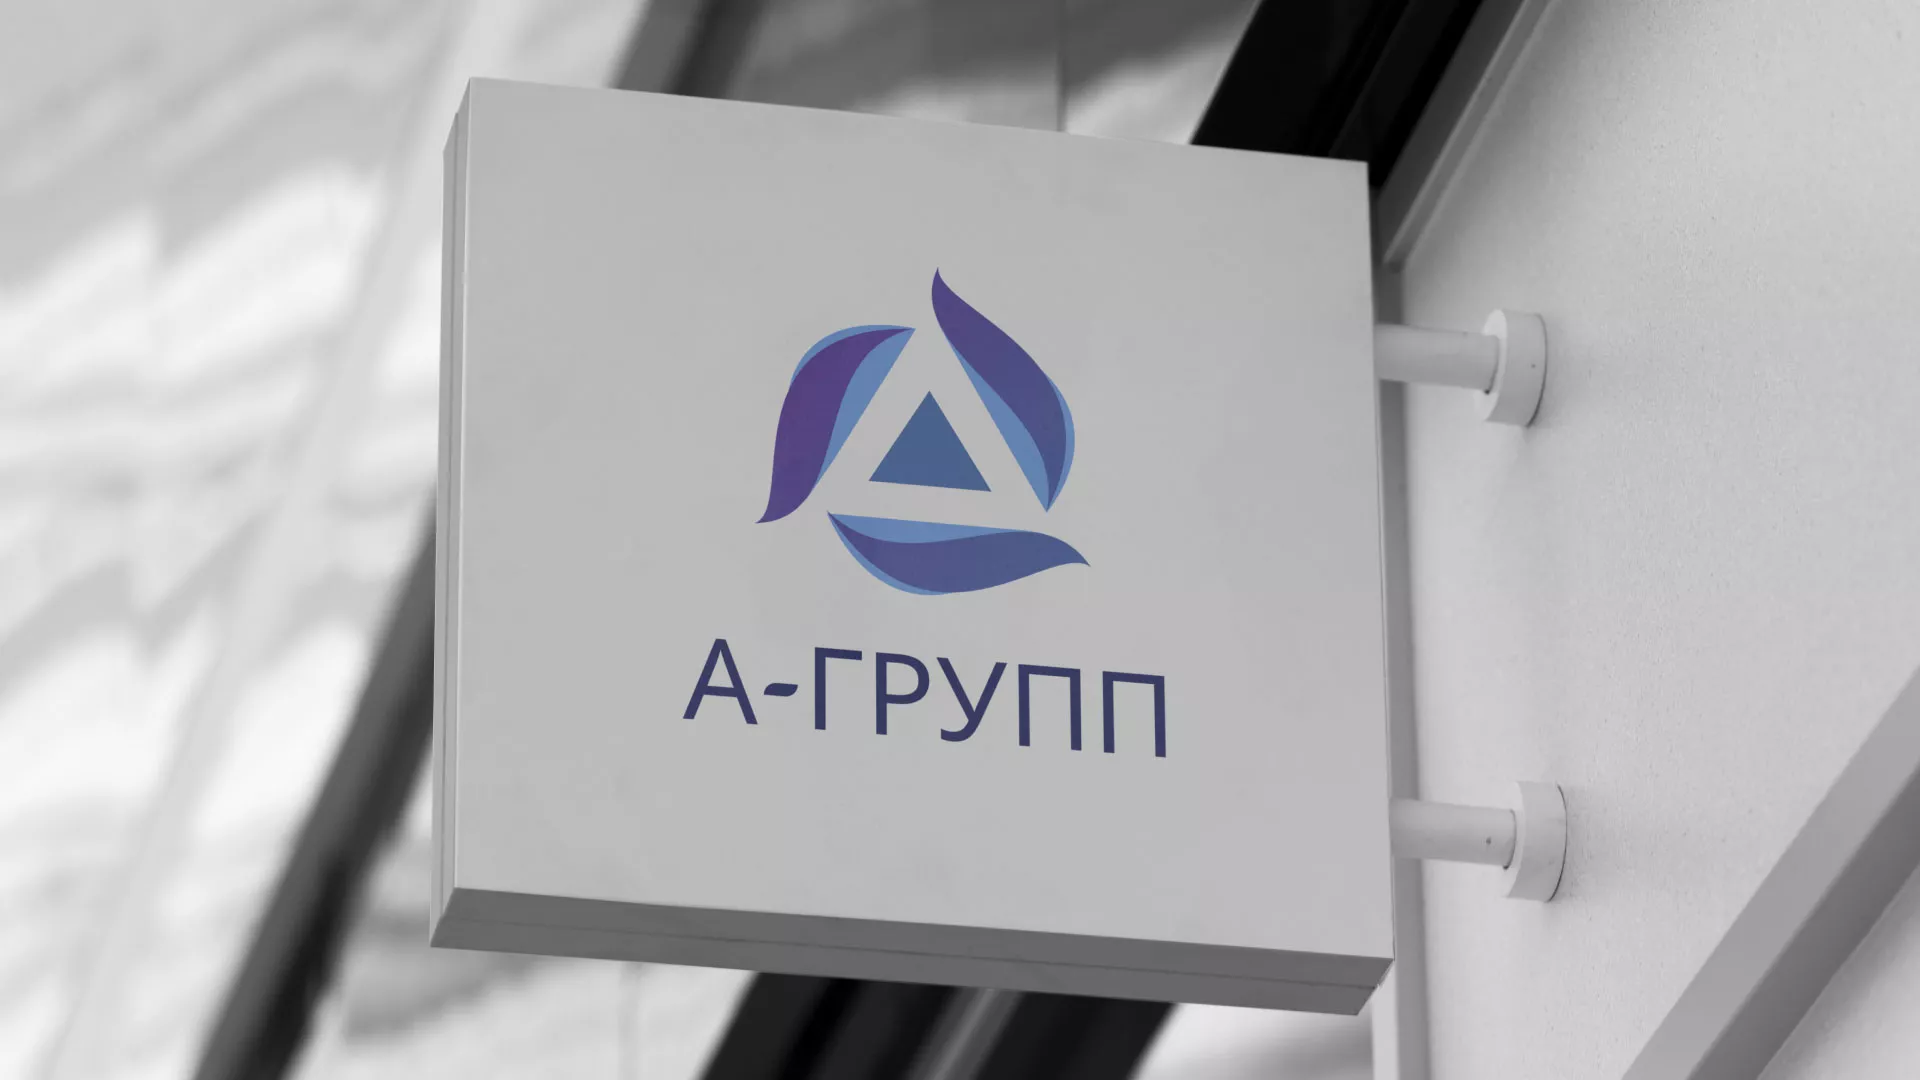 Создание логотипа компании «А-ГРУПП» в Трёхгорном